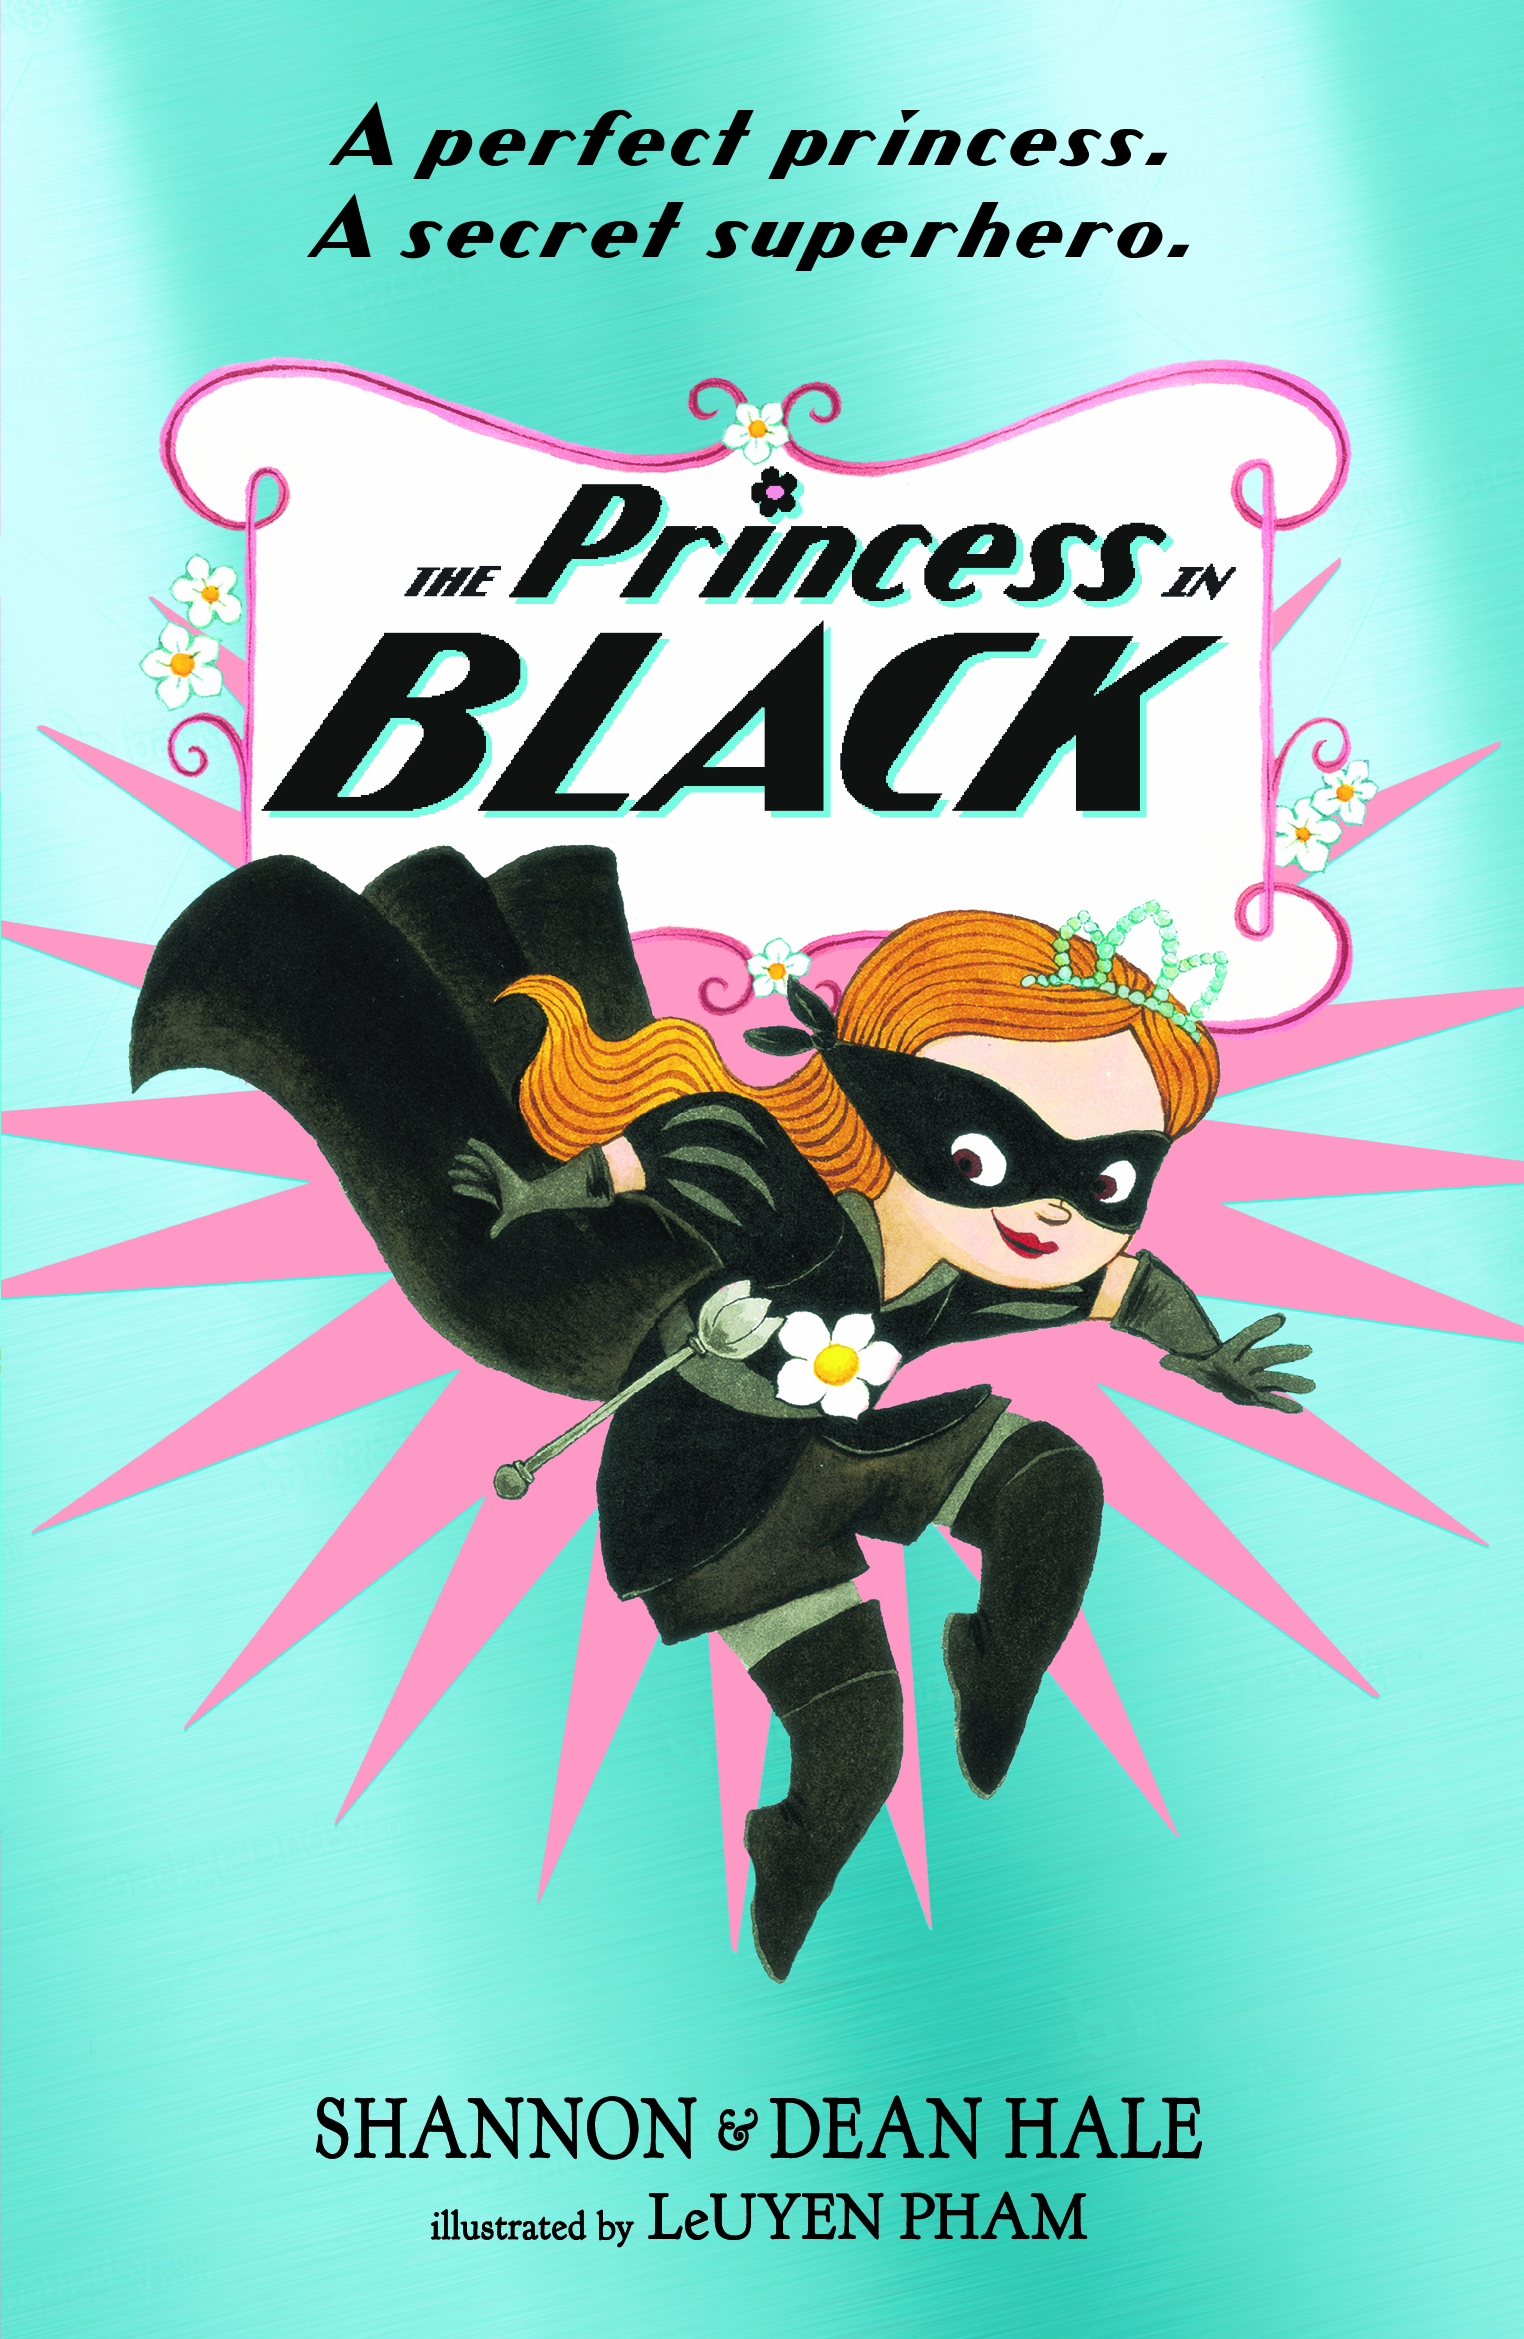 The-Princess-in-Black